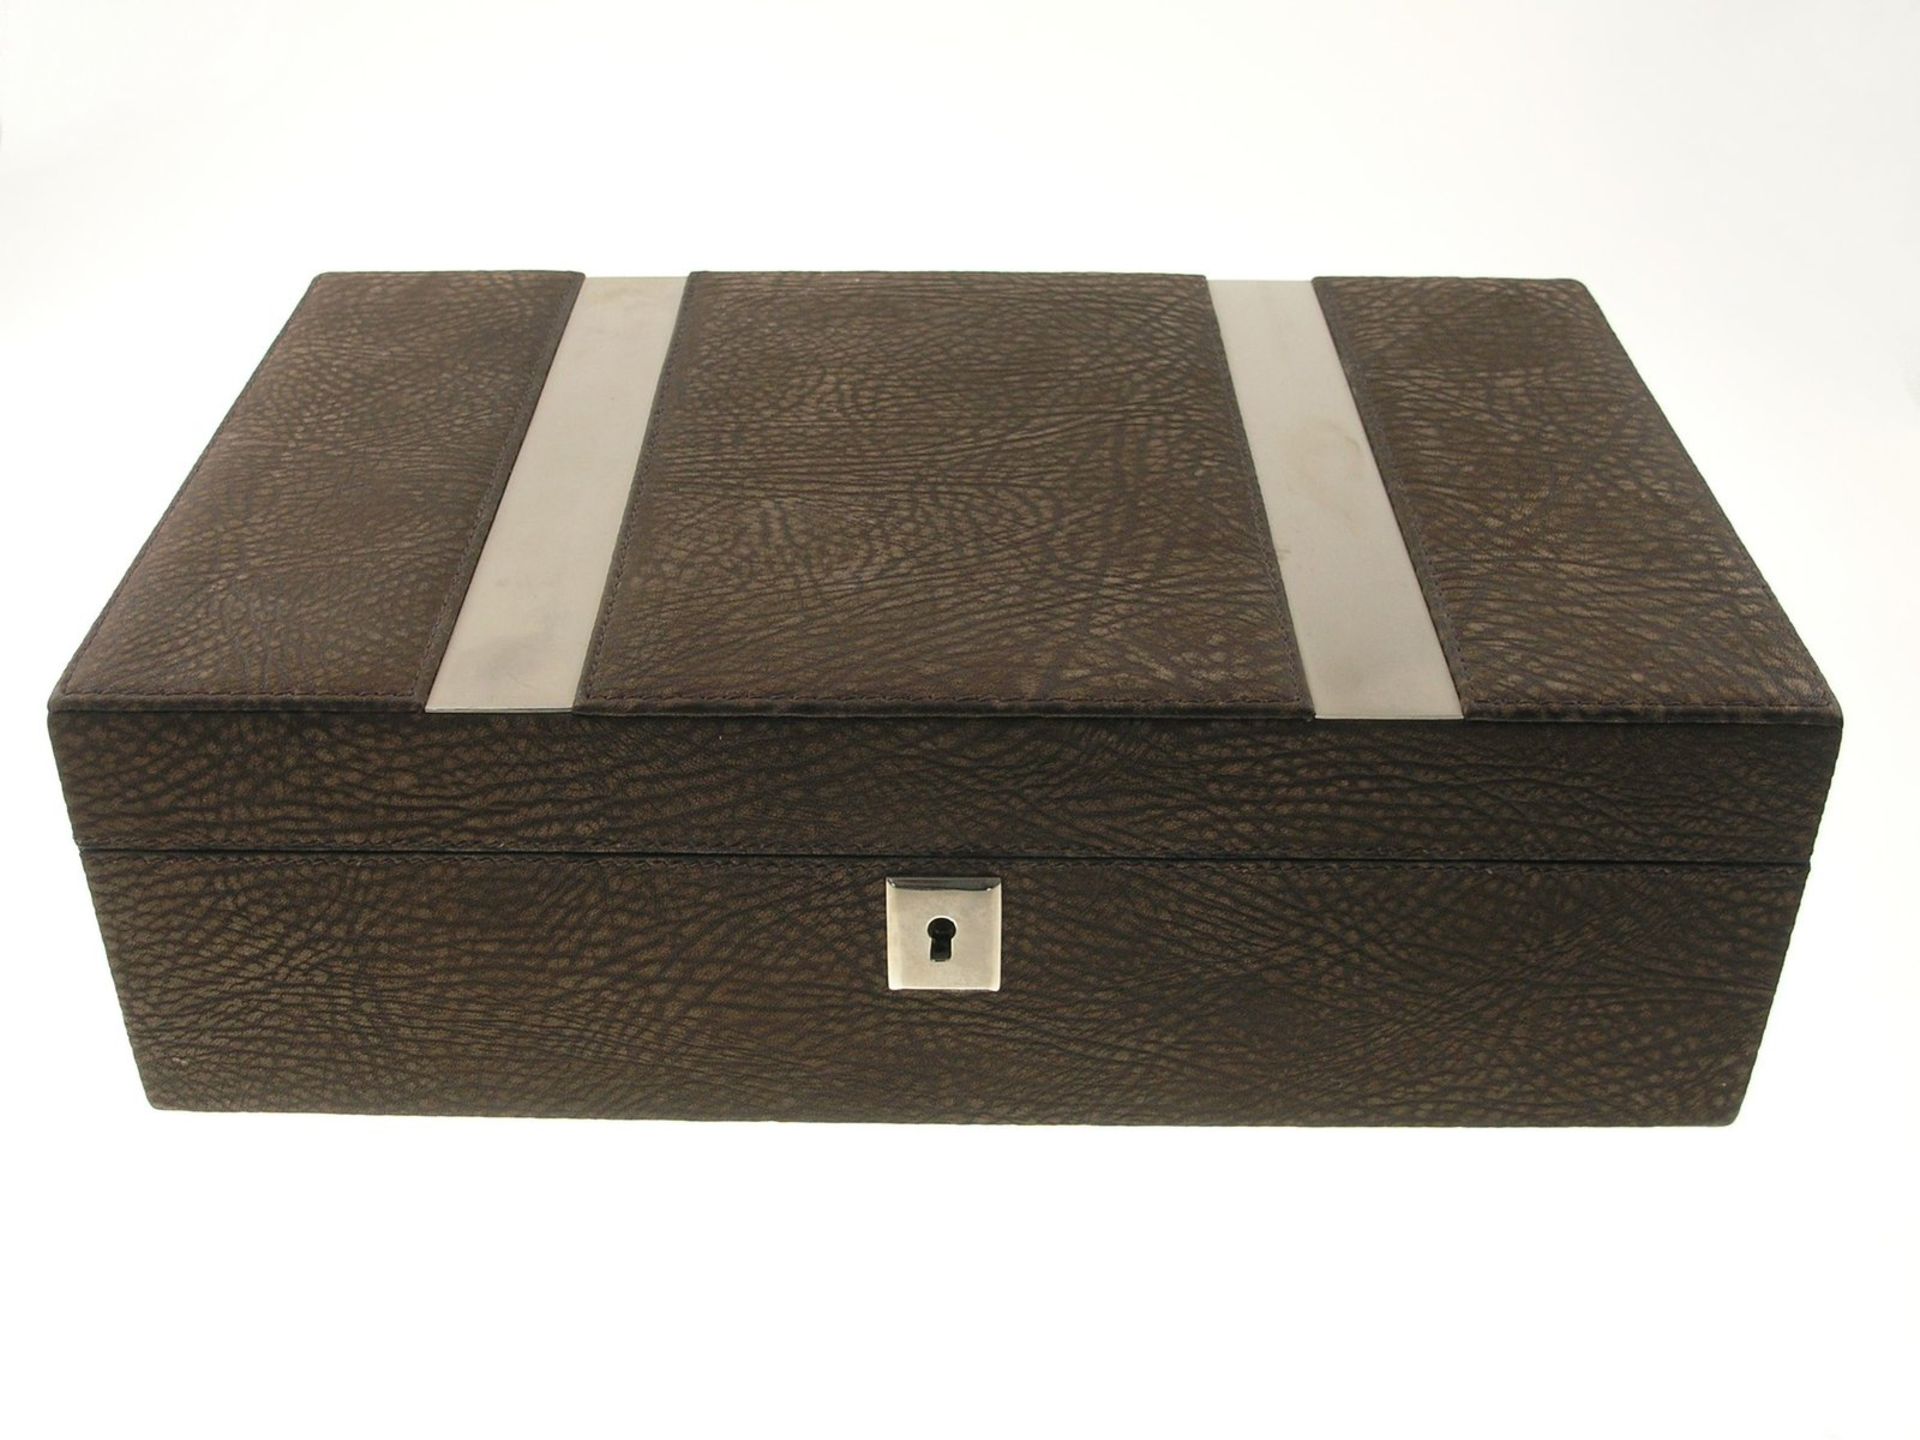 Humidor, vintageCa. 30 × 19 × 9cm, Holz und Leder, eingebautes Hygrometer, vermutlich 60er Jahre, - Image 2 of 2